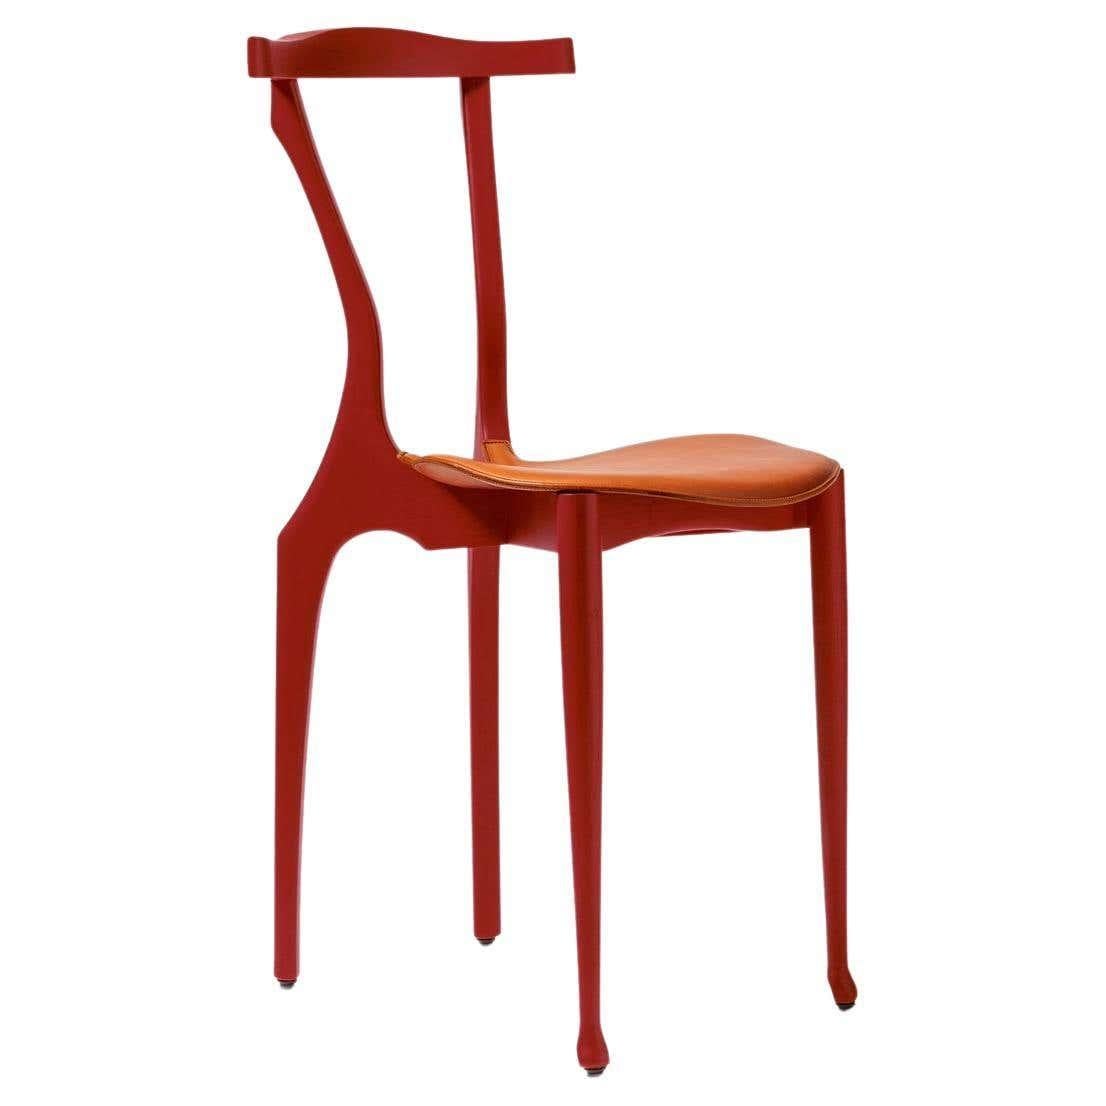 21 Century Black Gaulinetta Stuhl mit offenporig lackierter Esche in Rot Finish

MATERIALIEN: 
Esche, verstecken

Abmessungen: 
T 52 cm x B 42 cm x H 83 cm. (SH 48 cm)

So können wir ihn in einer kleineren Größe herstellen, ohne dass er an